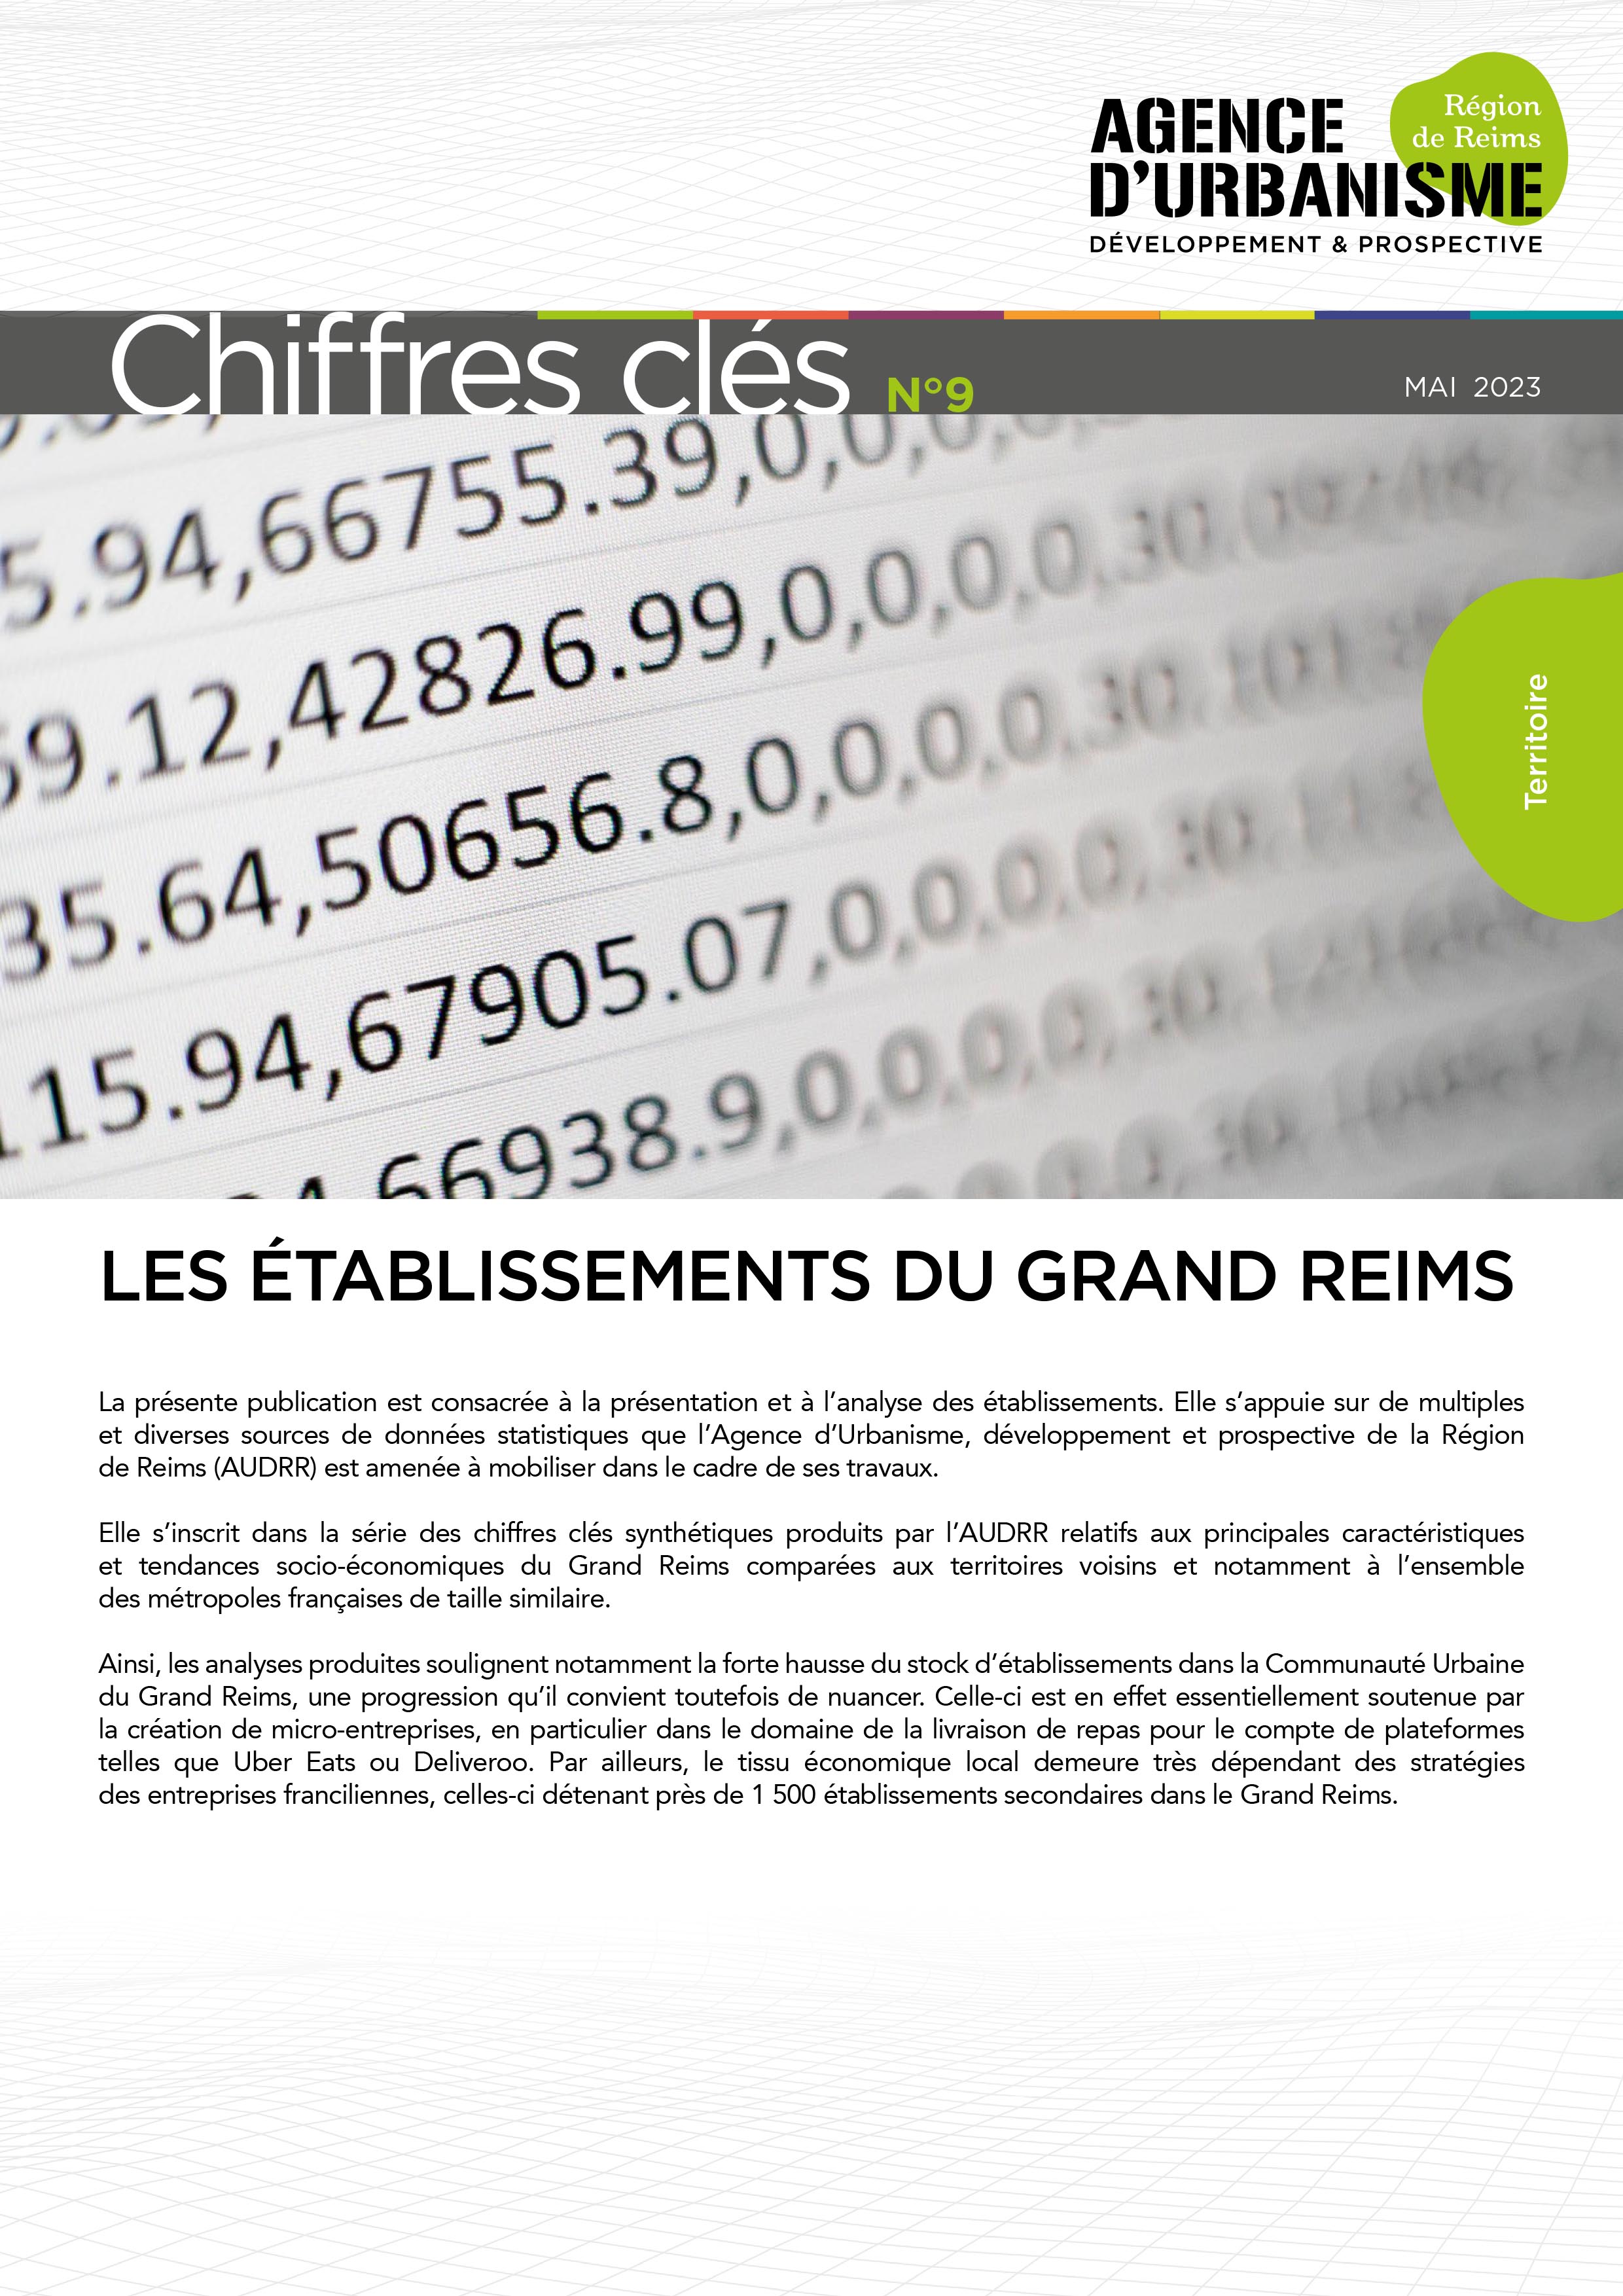 CHIFFRES CLÉS N°9 : LES ETABLISSEMENTS DU GRAND REIMS